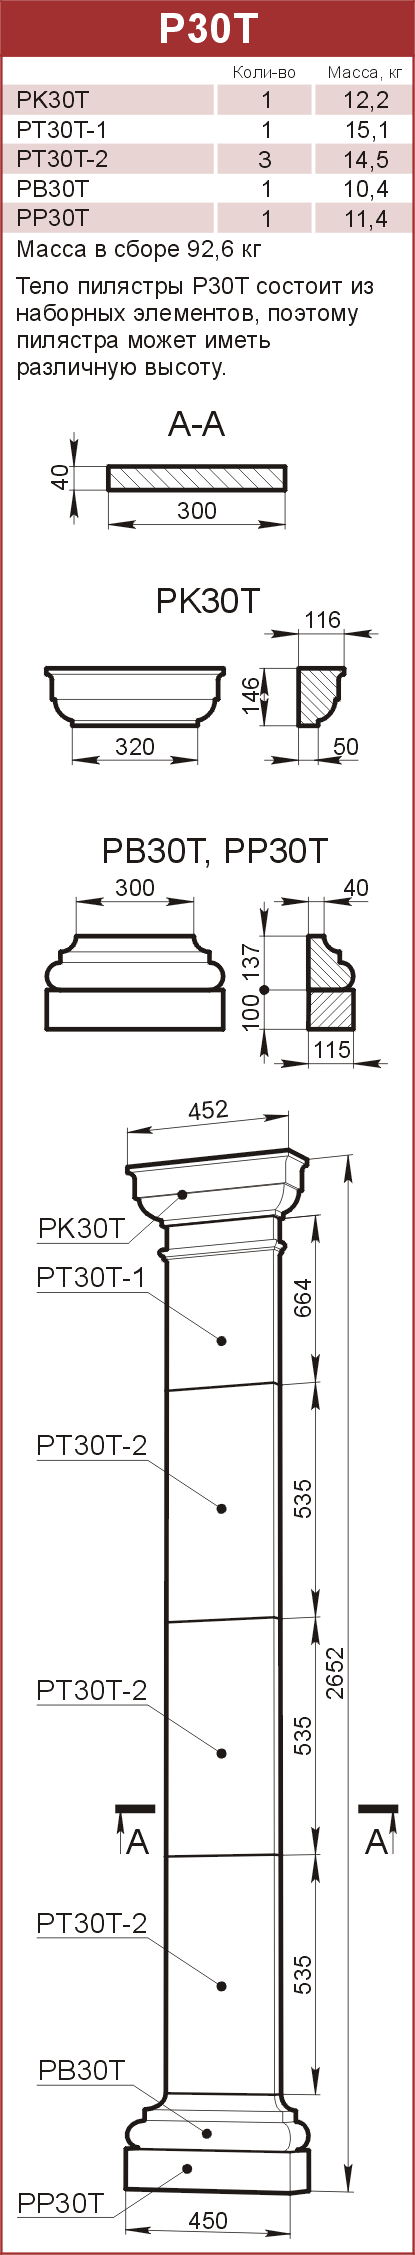 Пилястры из камня — роскошное украшение интерьера и экстерьера!: P30T - 13450 руб/шт. 